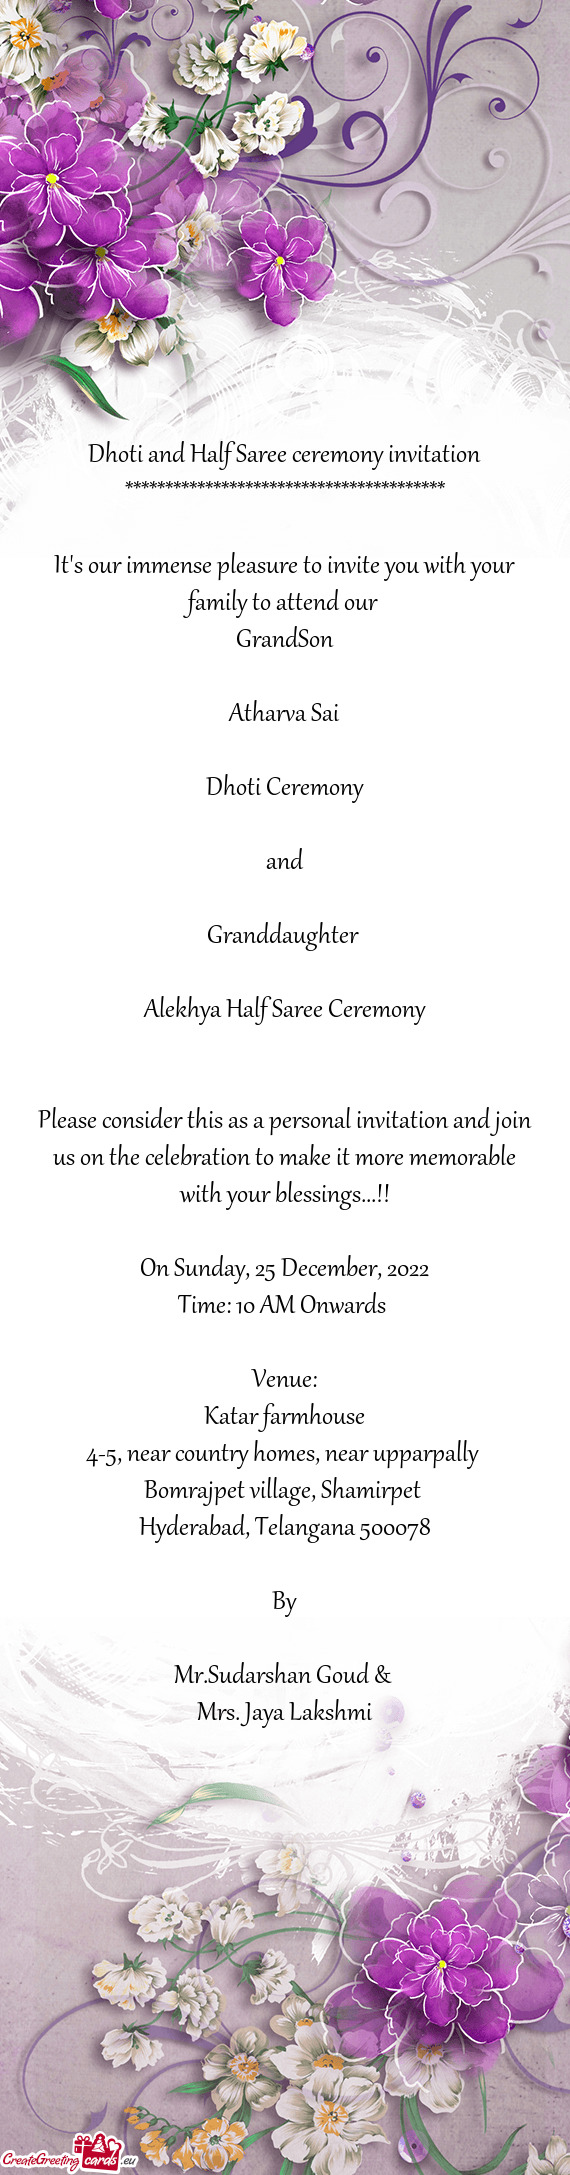 Alekhya Half Saree Ceremony